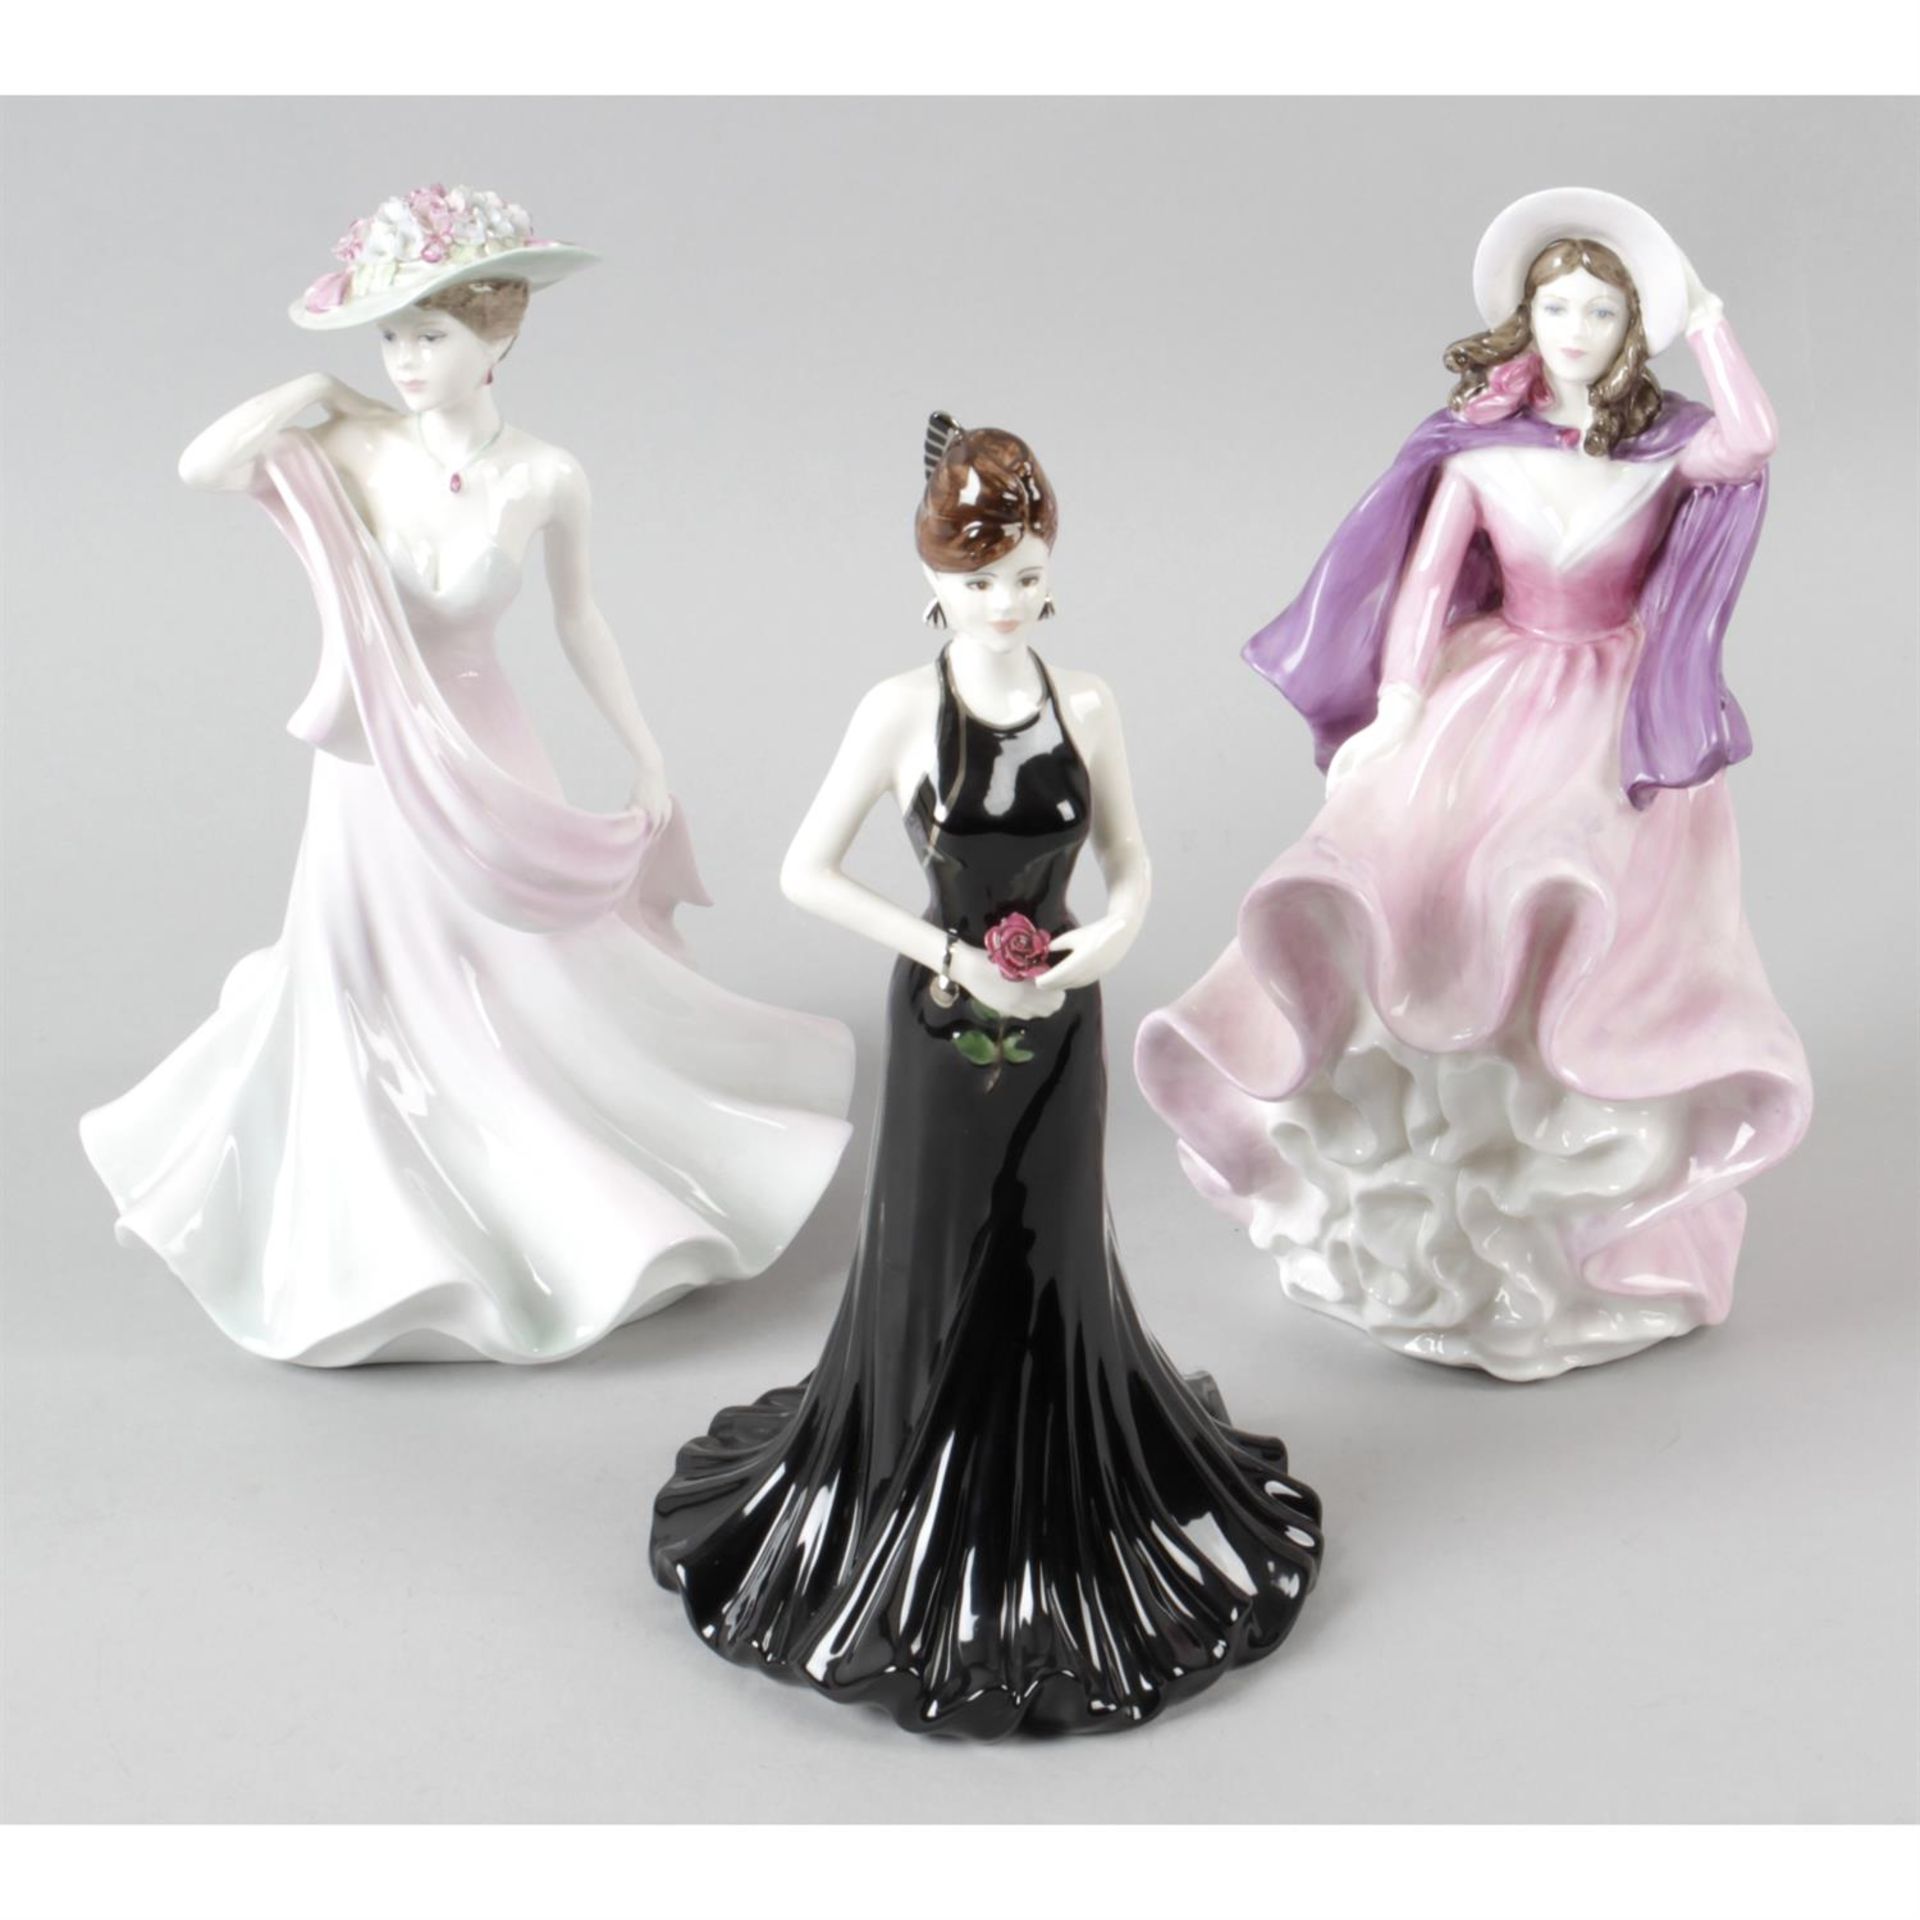 A selection of Coalport figurines.